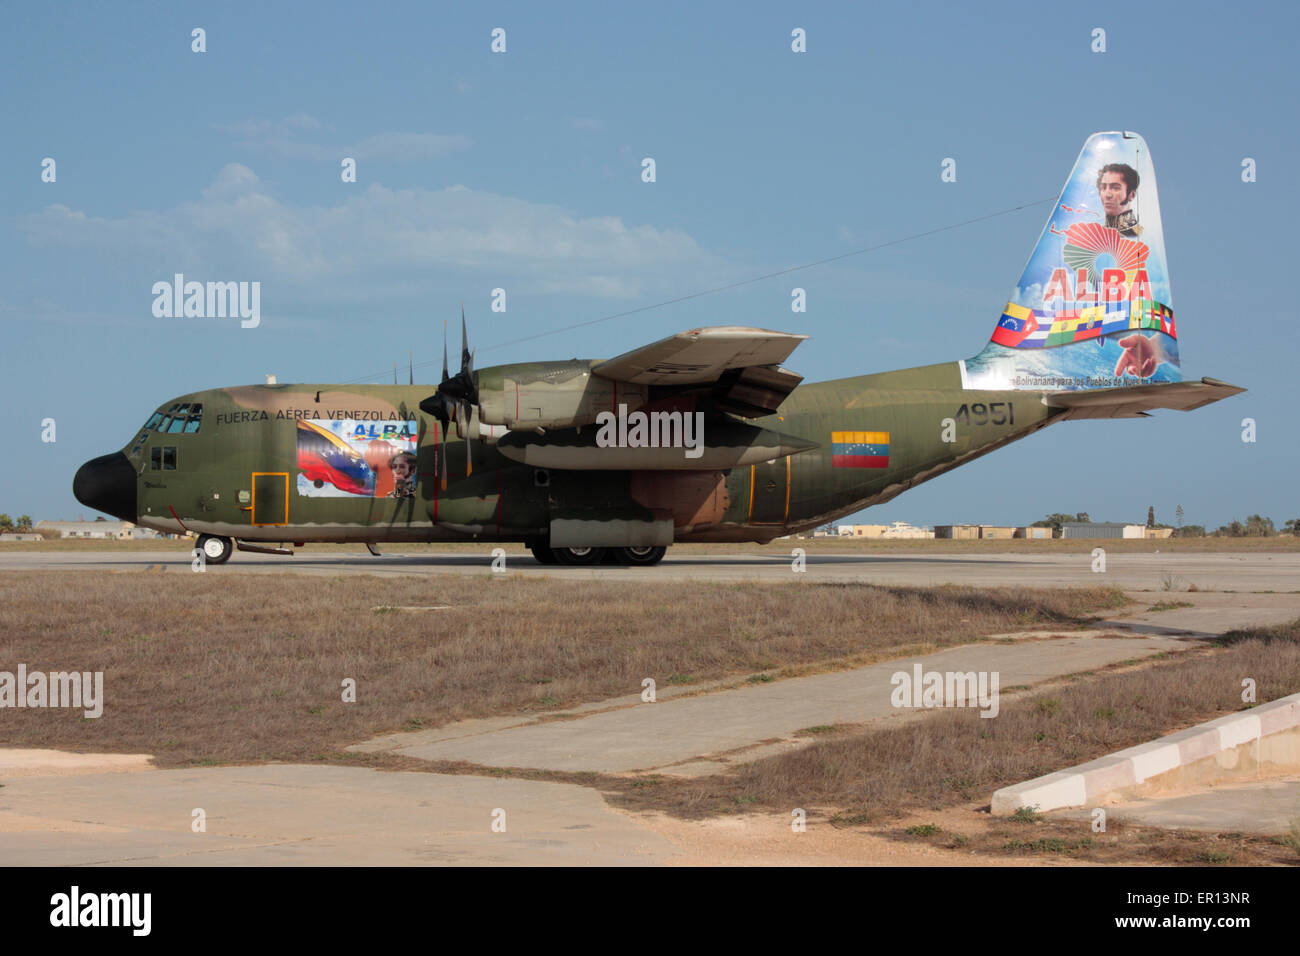 Aviazione Militare. Lockheed C-130H Hercules il piano di trasporto delle Forze Aeree Venezuelane Foto Stock